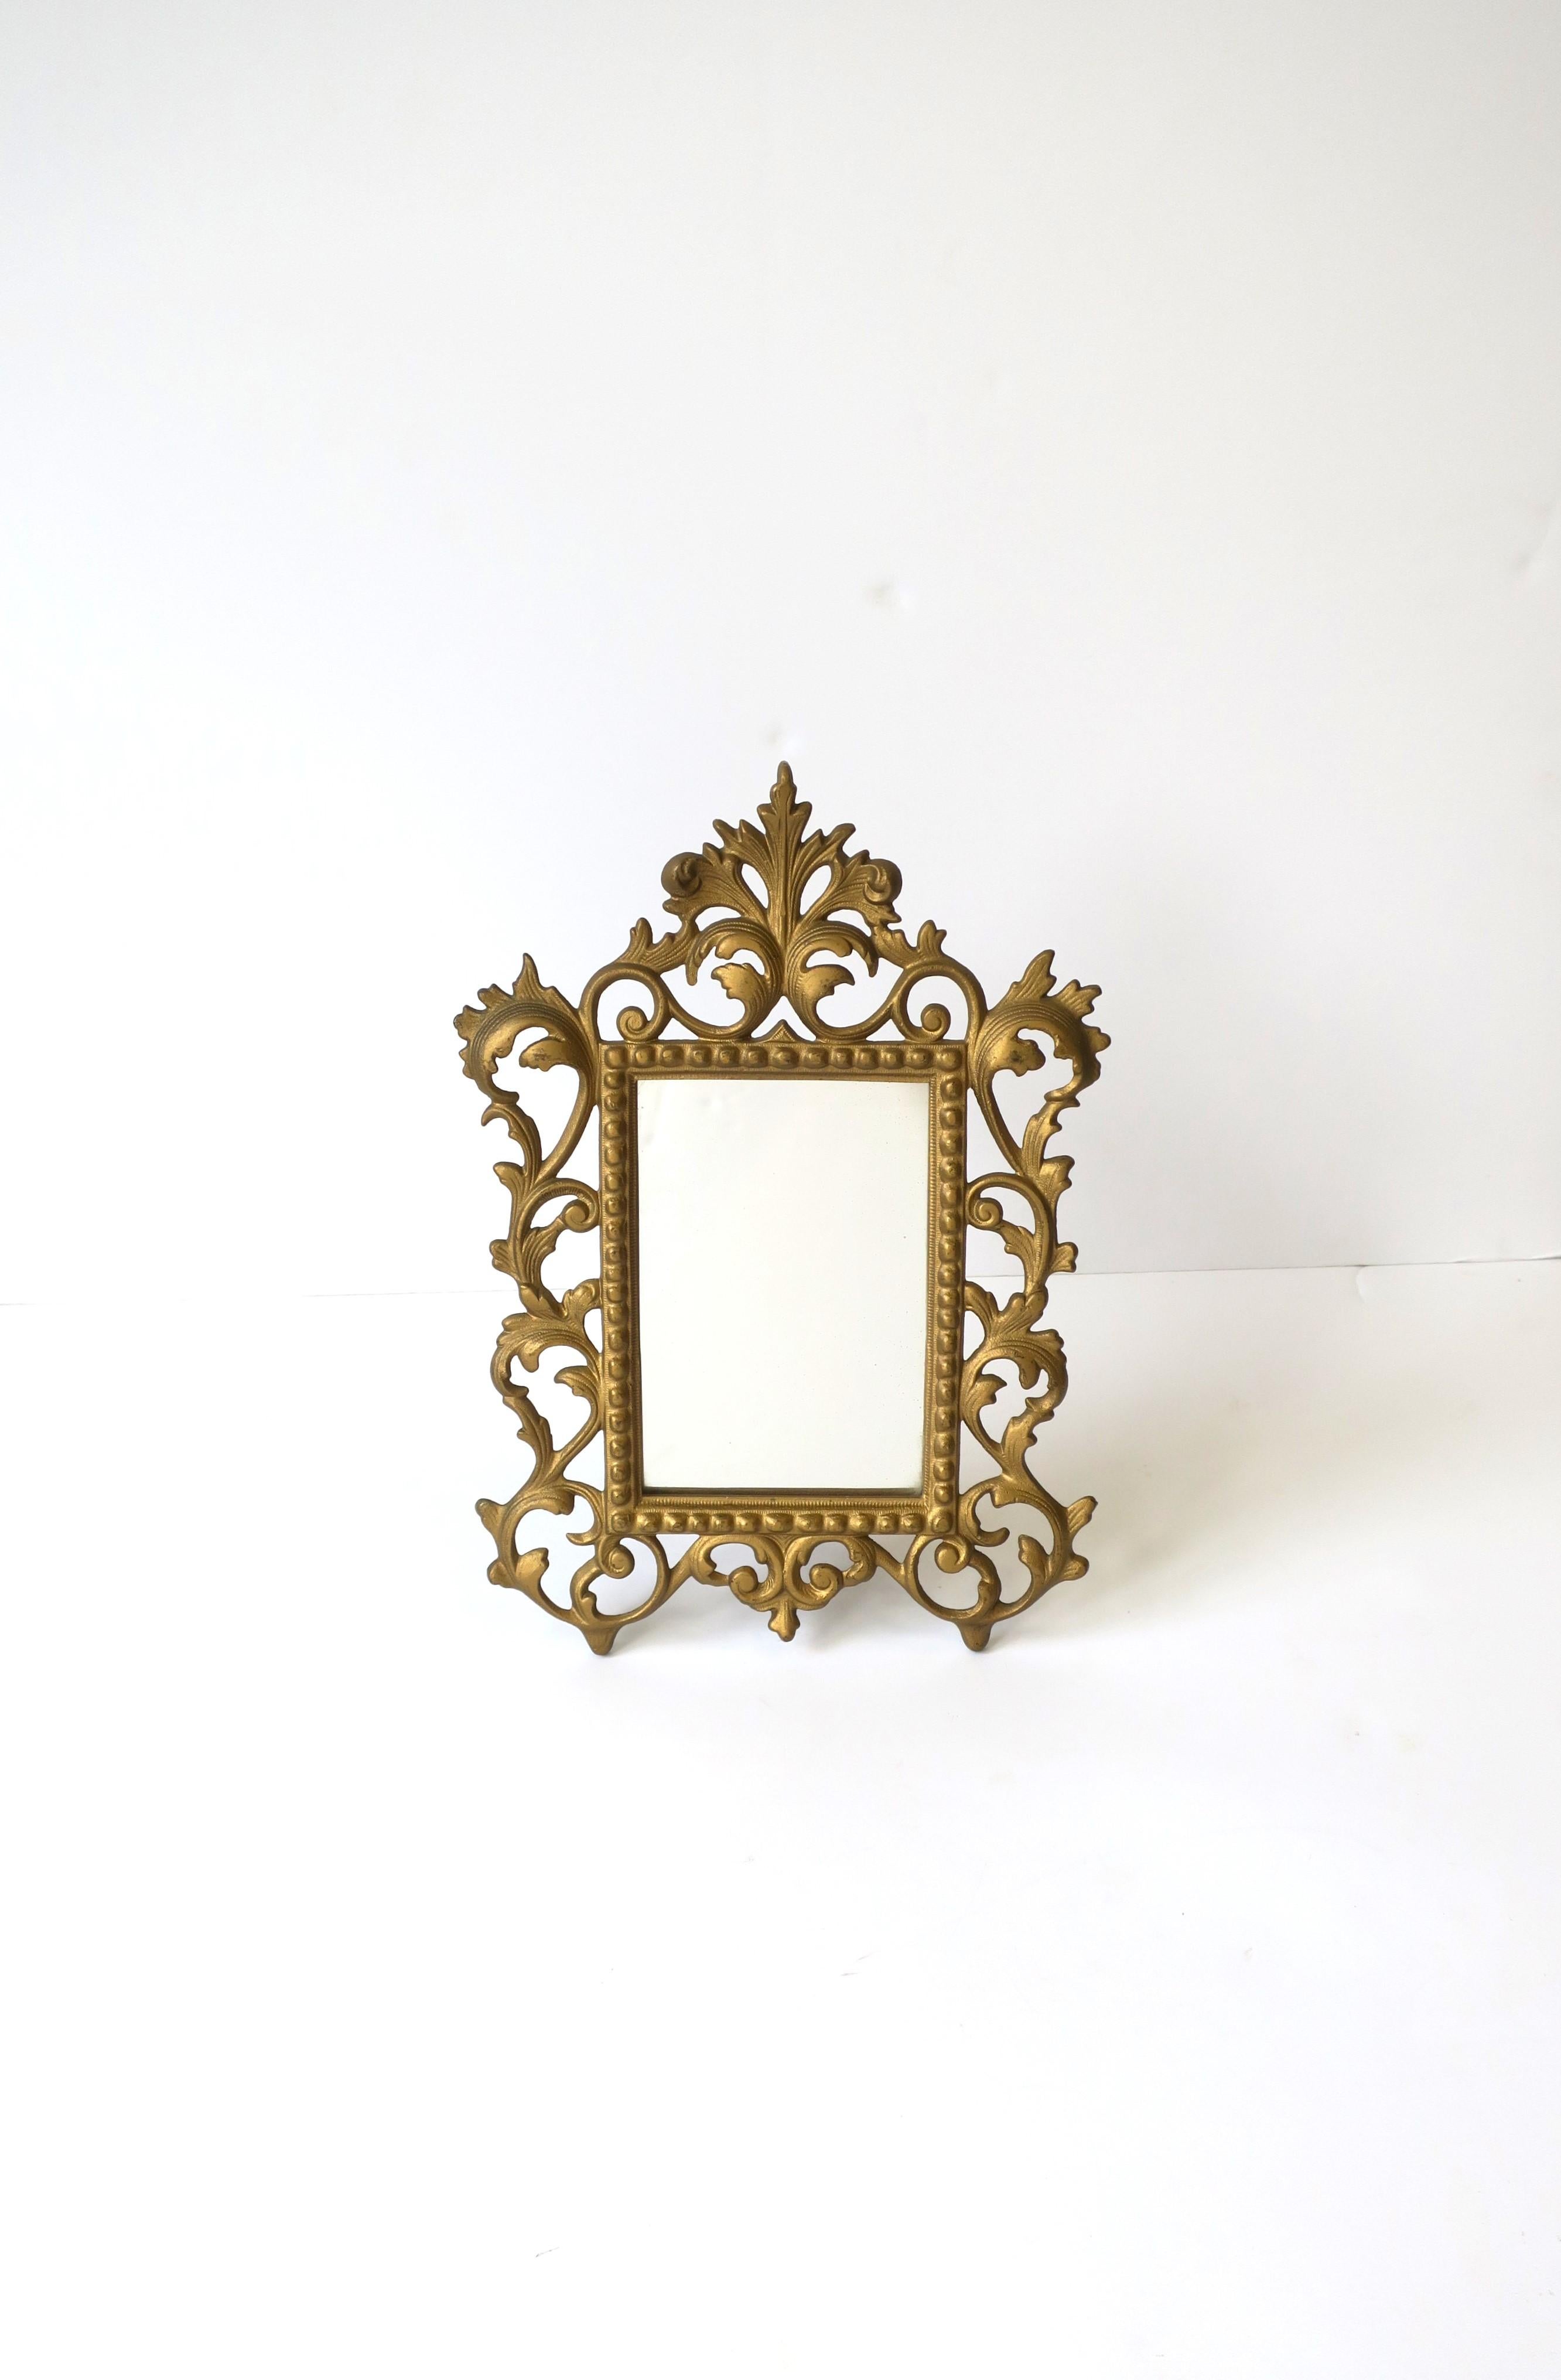 Precioso espejo o marco de mesa de latón antiguo de la época victoriana, de principios del siglo XX. El cristal está encastrado en el marco y se puede quitar fácilmente para limpiarlo. Dimensiones del área de imagen: 3,75